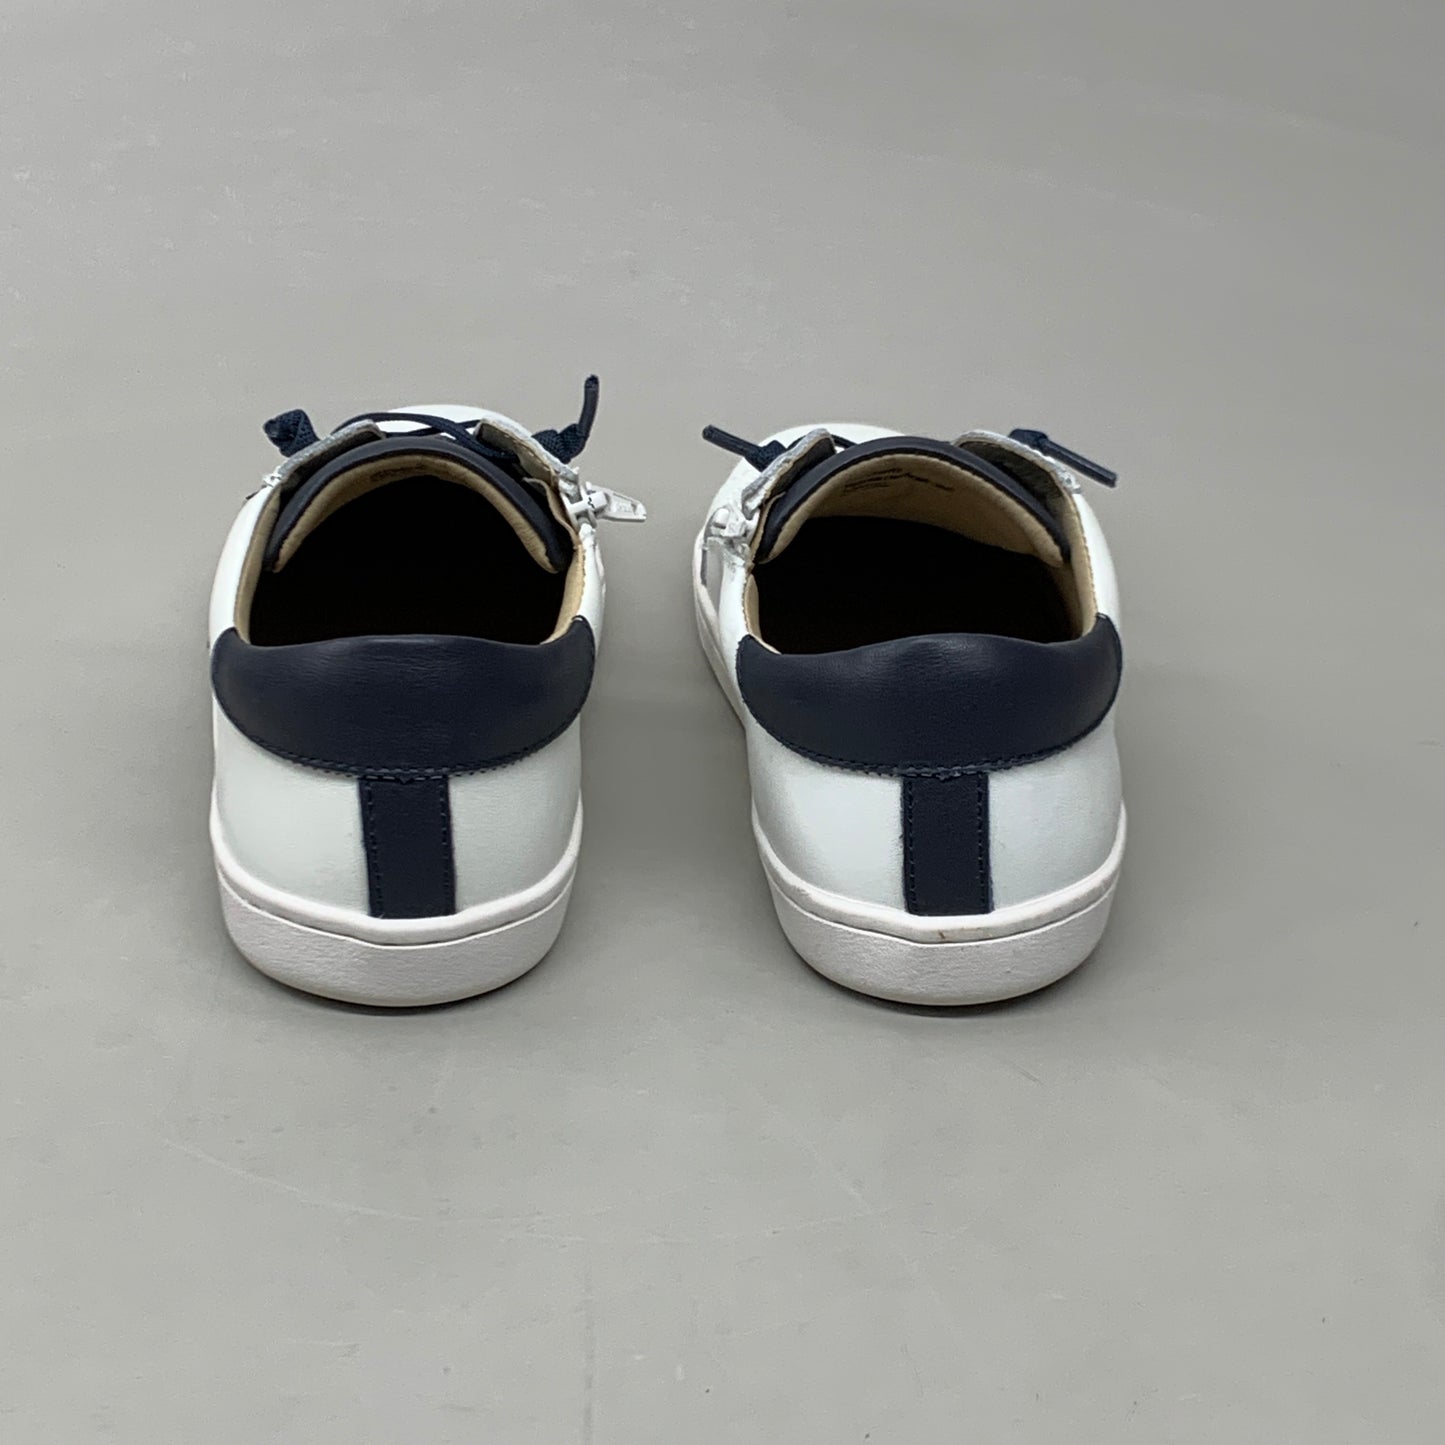 OLD SOLES Comet Runner Sneakers Kid’s Sz 1.5 EU 33 Snow/Navy/Gris #6149